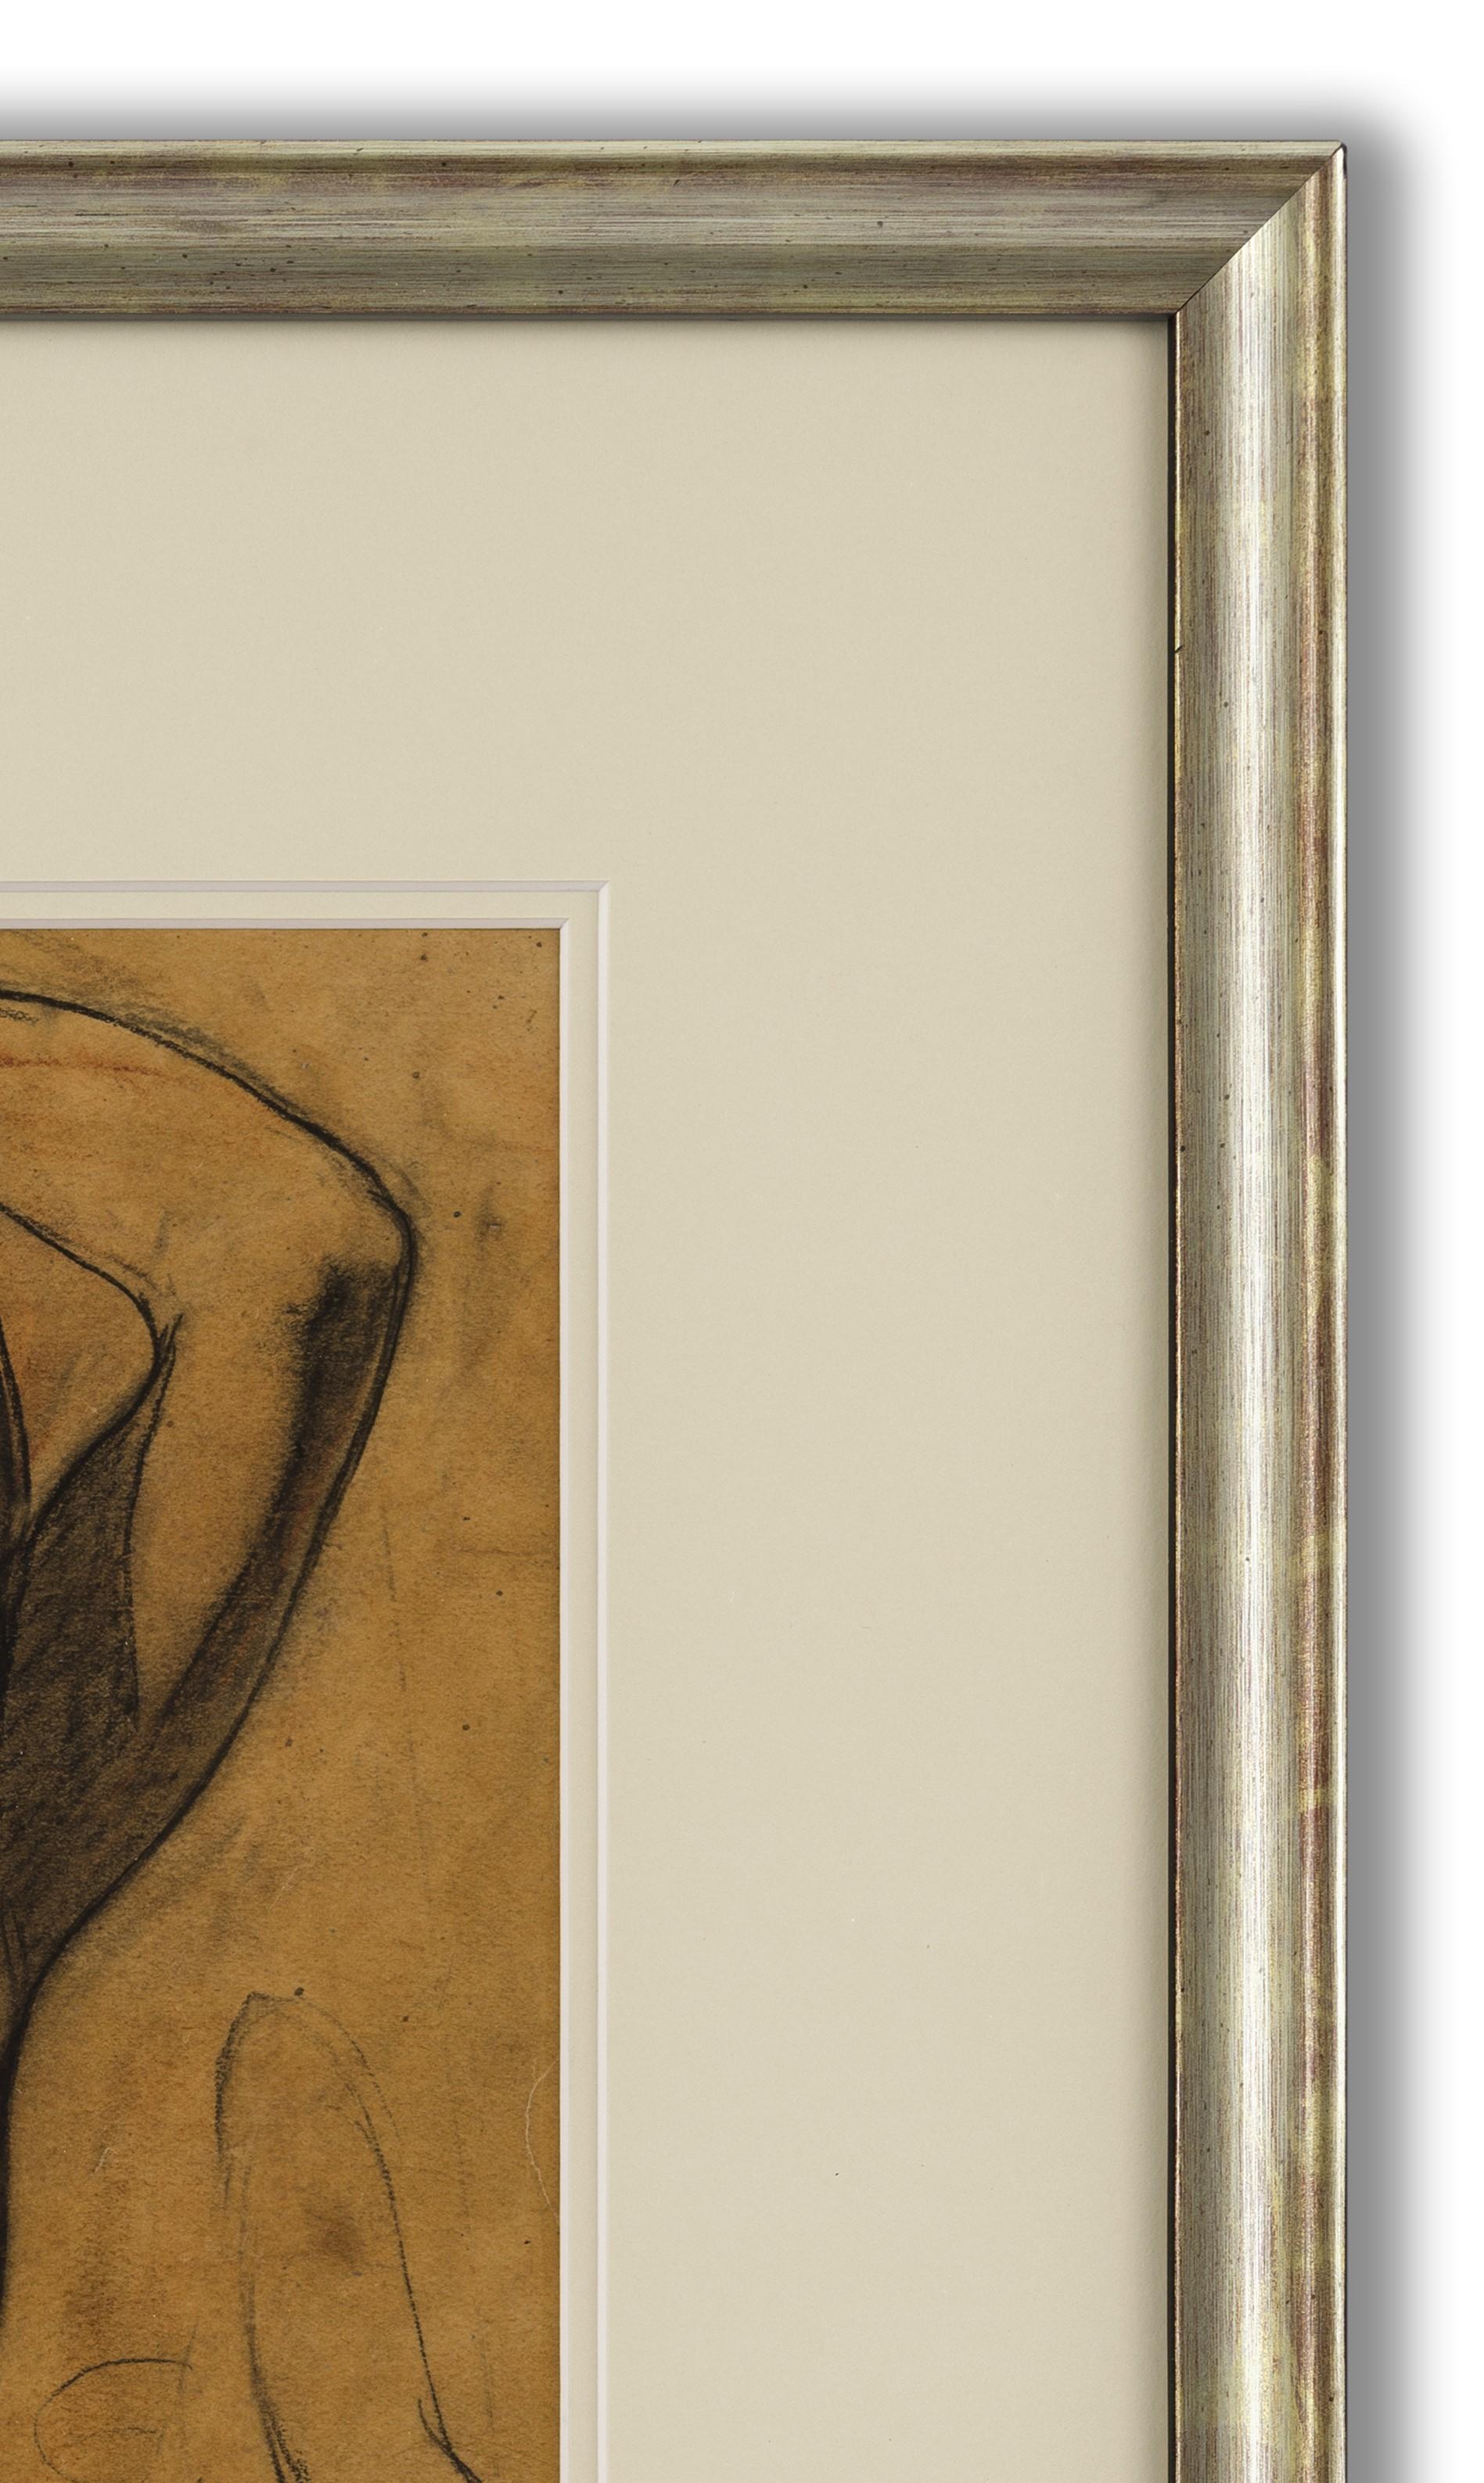 Craie noire et rouge sur papier, signé et daté (en bas à droite), 31cm x 27cm (50cm x 45cm encadré). 

Delmotte était un peintre, un dessinateur, un aquarelliste et un sculpteur belge. D'abord peintre réaliste, il est influencé par l'expressionnisme